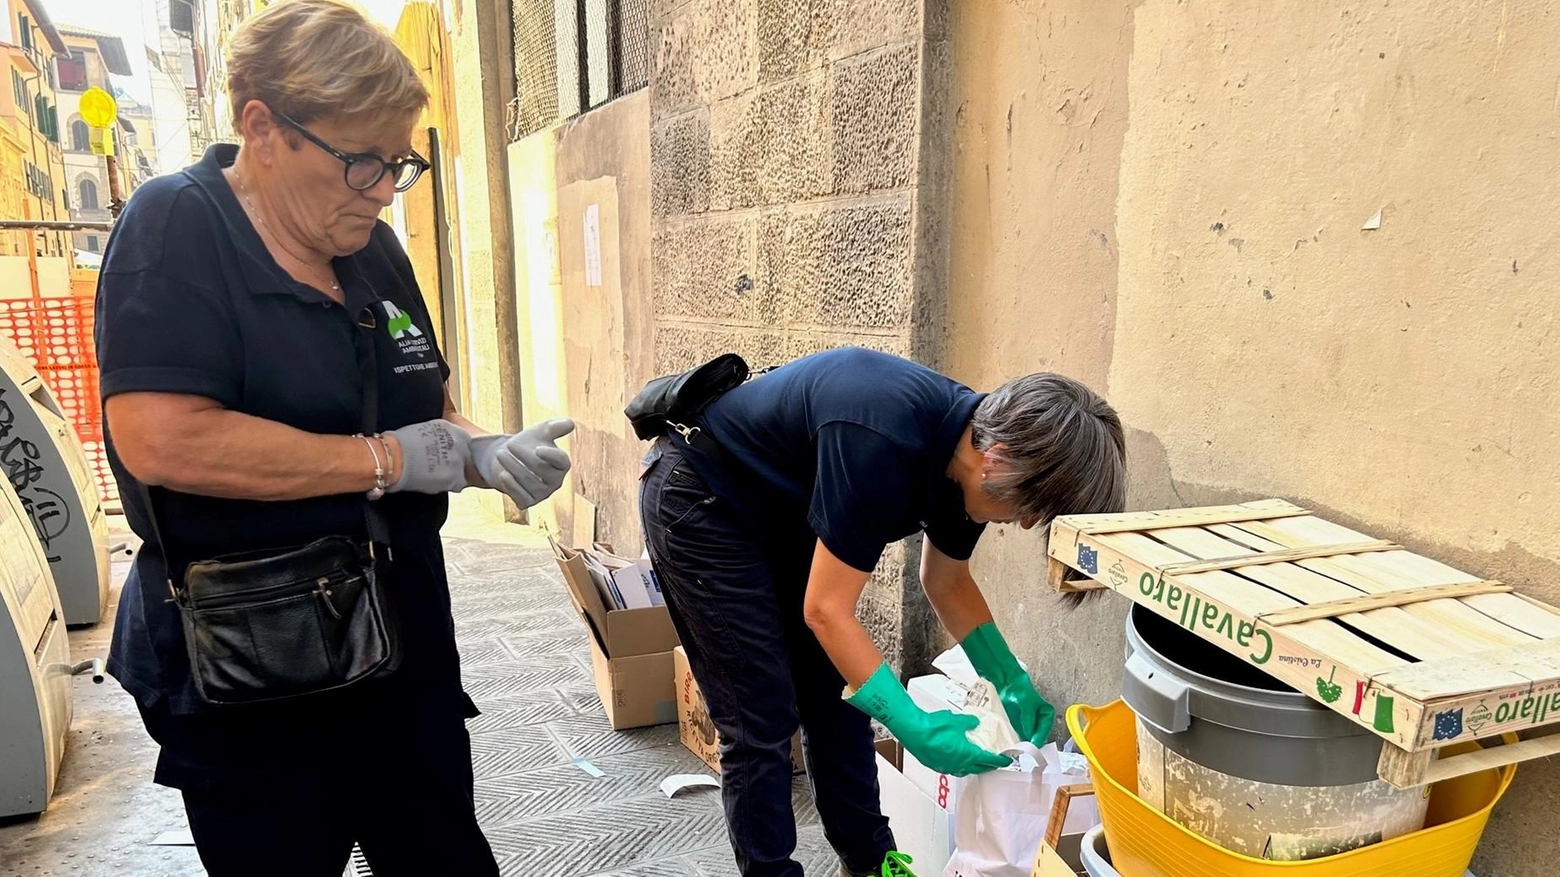 La lotta contro i furbetti dei rifiuti ad Empoli continua con 90 controlli a marzo da parte di Alia e della Municipale. Sono state emesse 5 sanzioni per un totale di 610 euro.